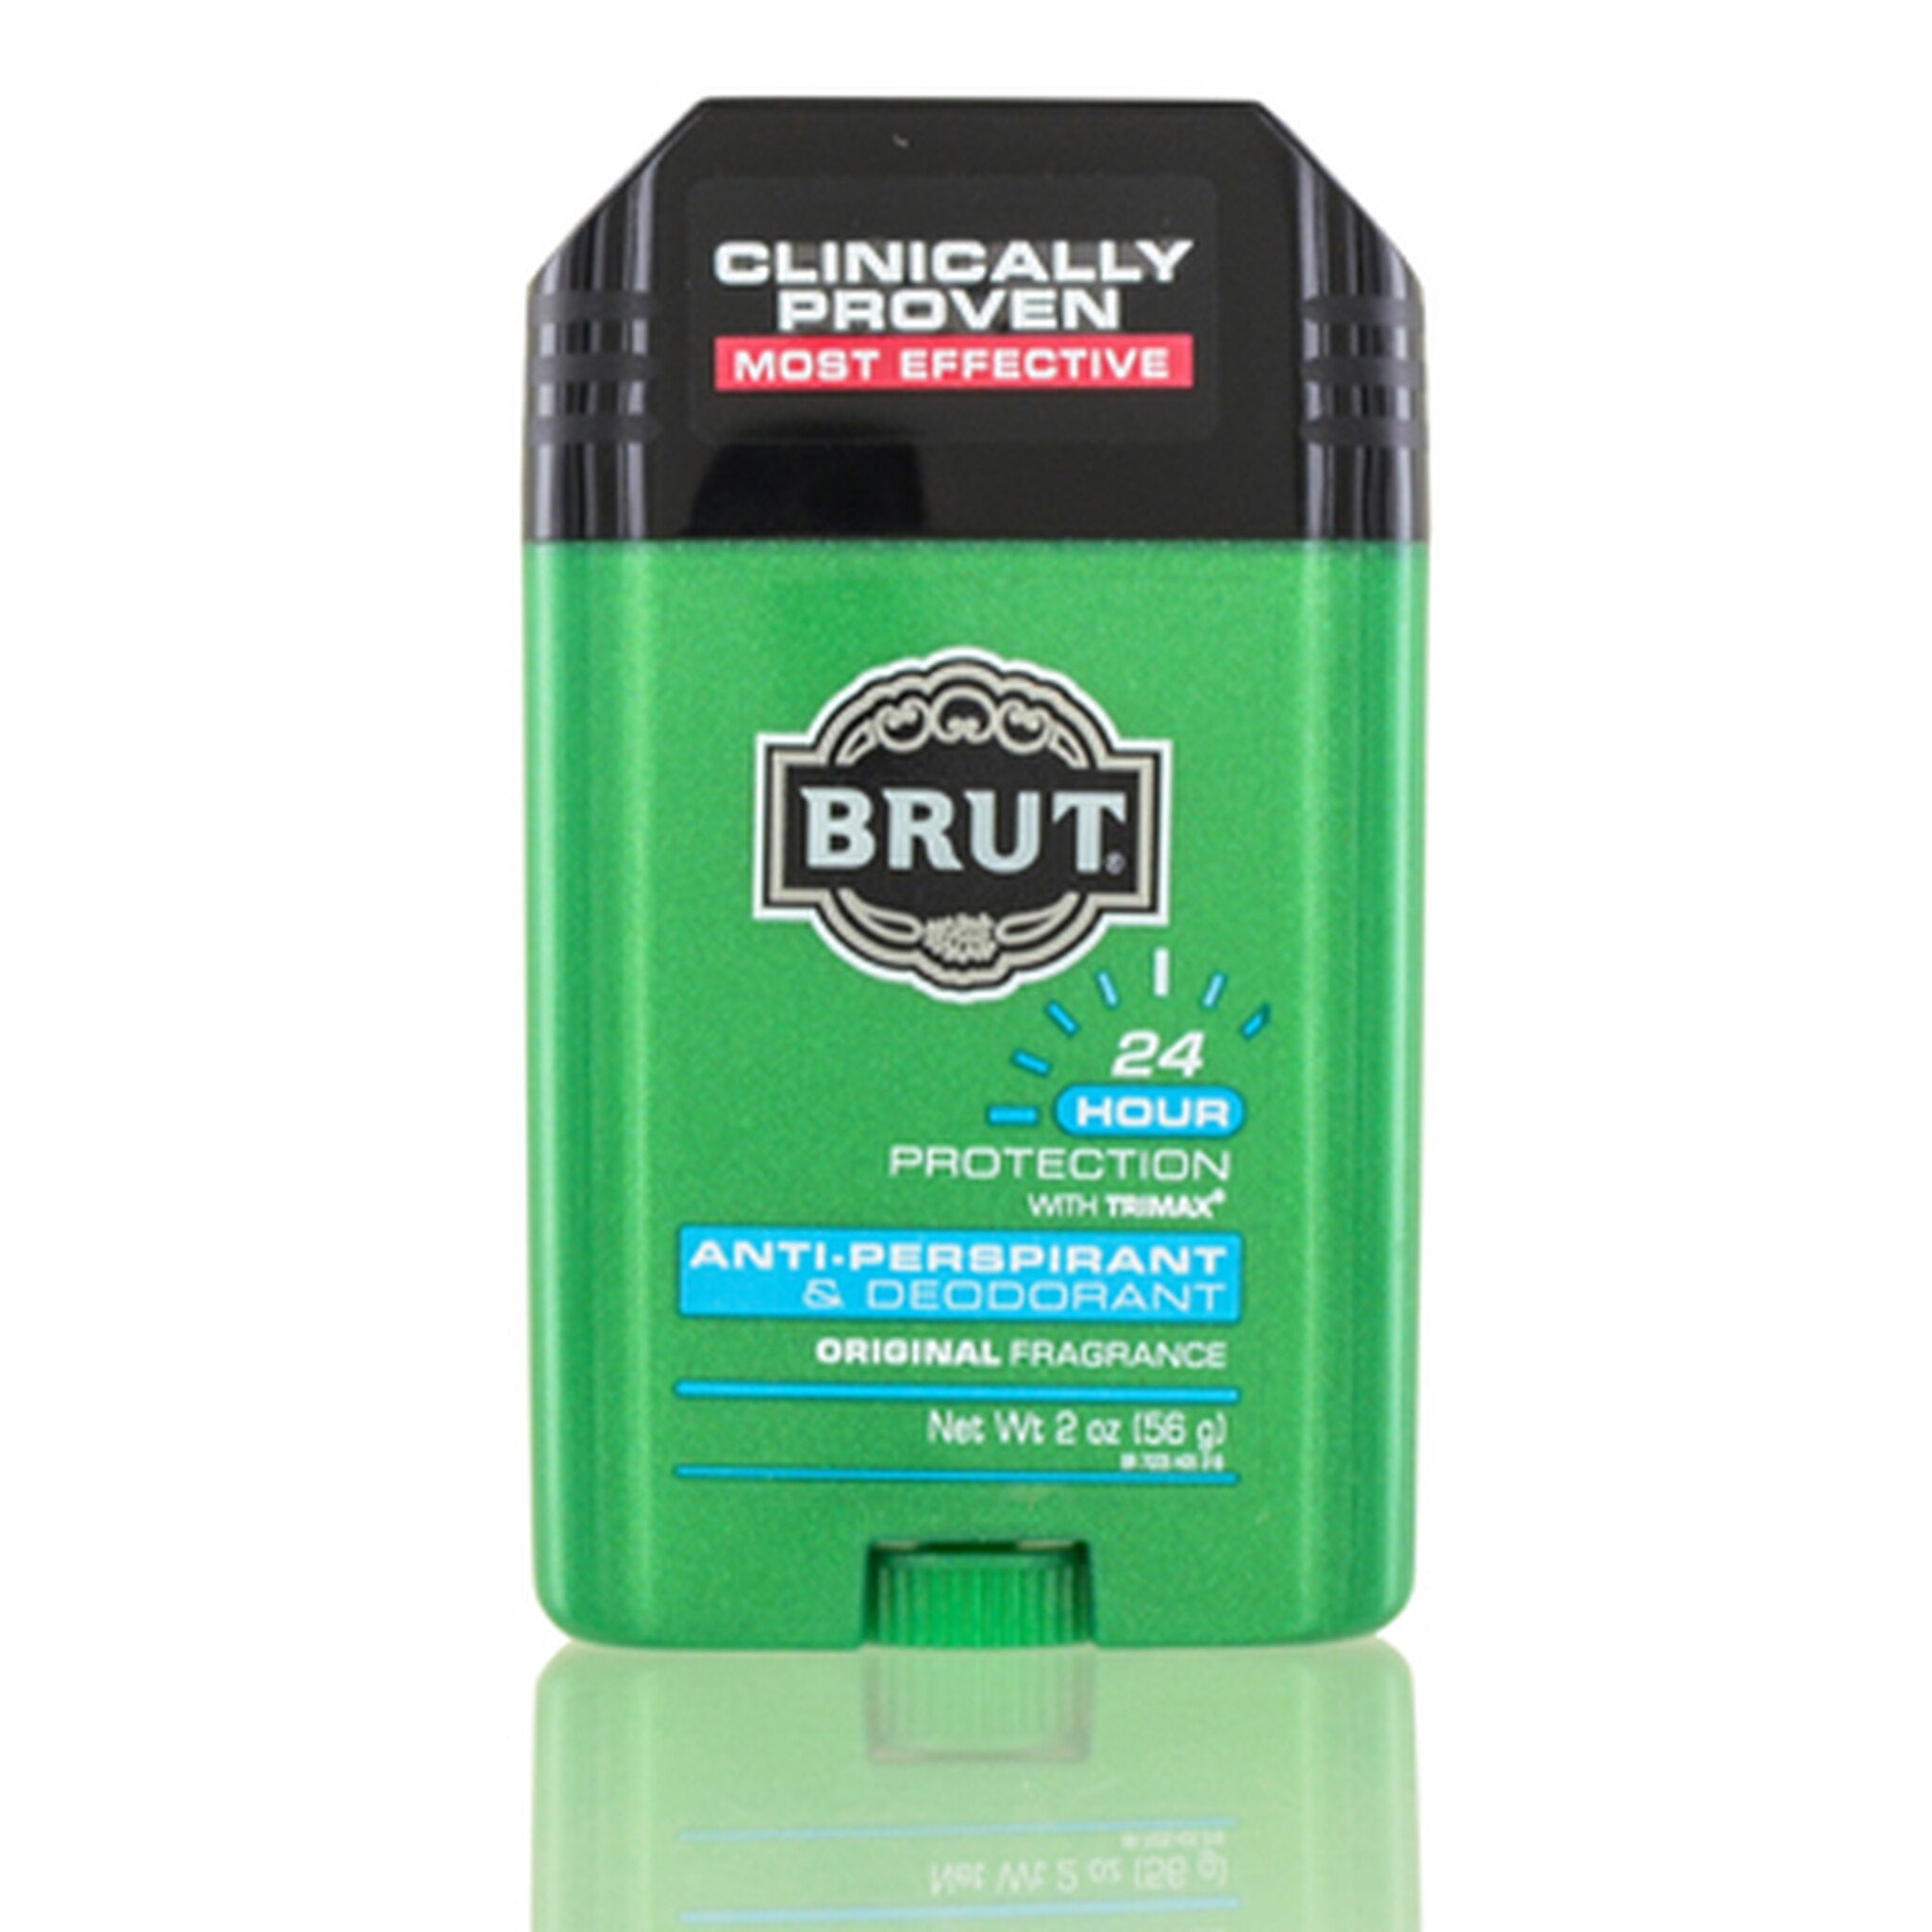 brut anti-perspirant & deodorant original fragrance (green) 56 grams (m)